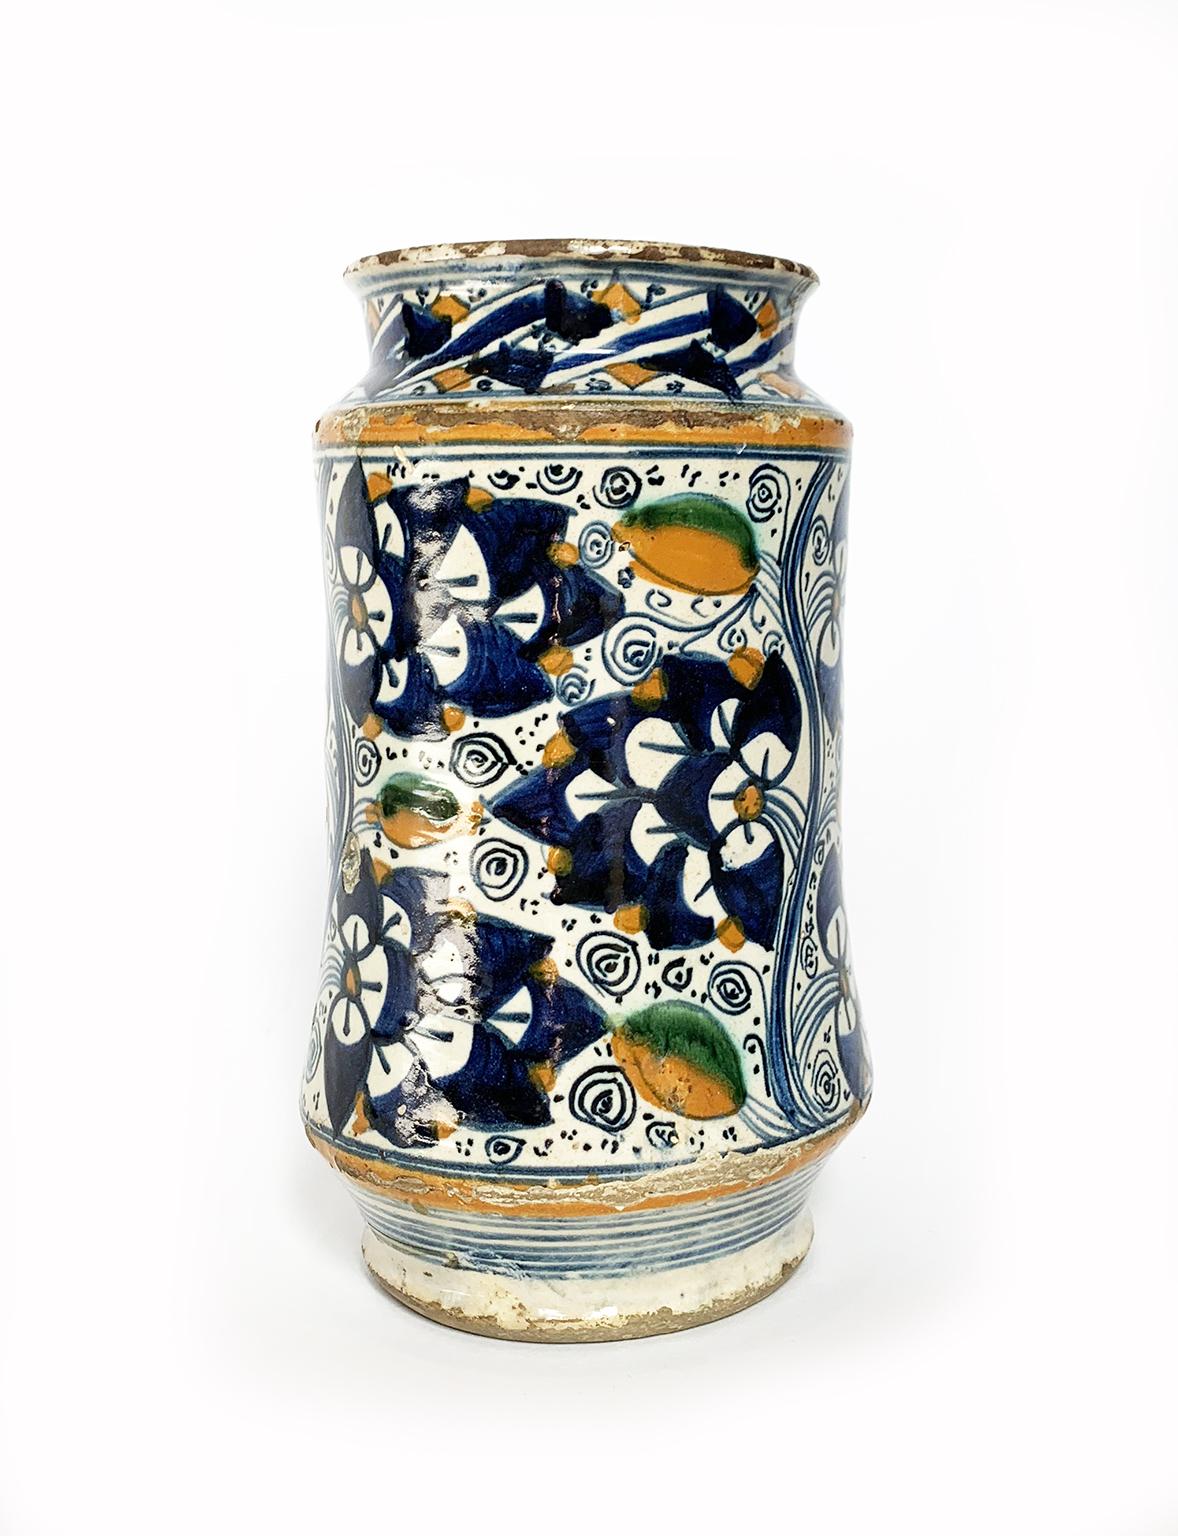 Renaissance Ancient Maiolia Drag Jar or Albarello, Montelupo, 1490-1510